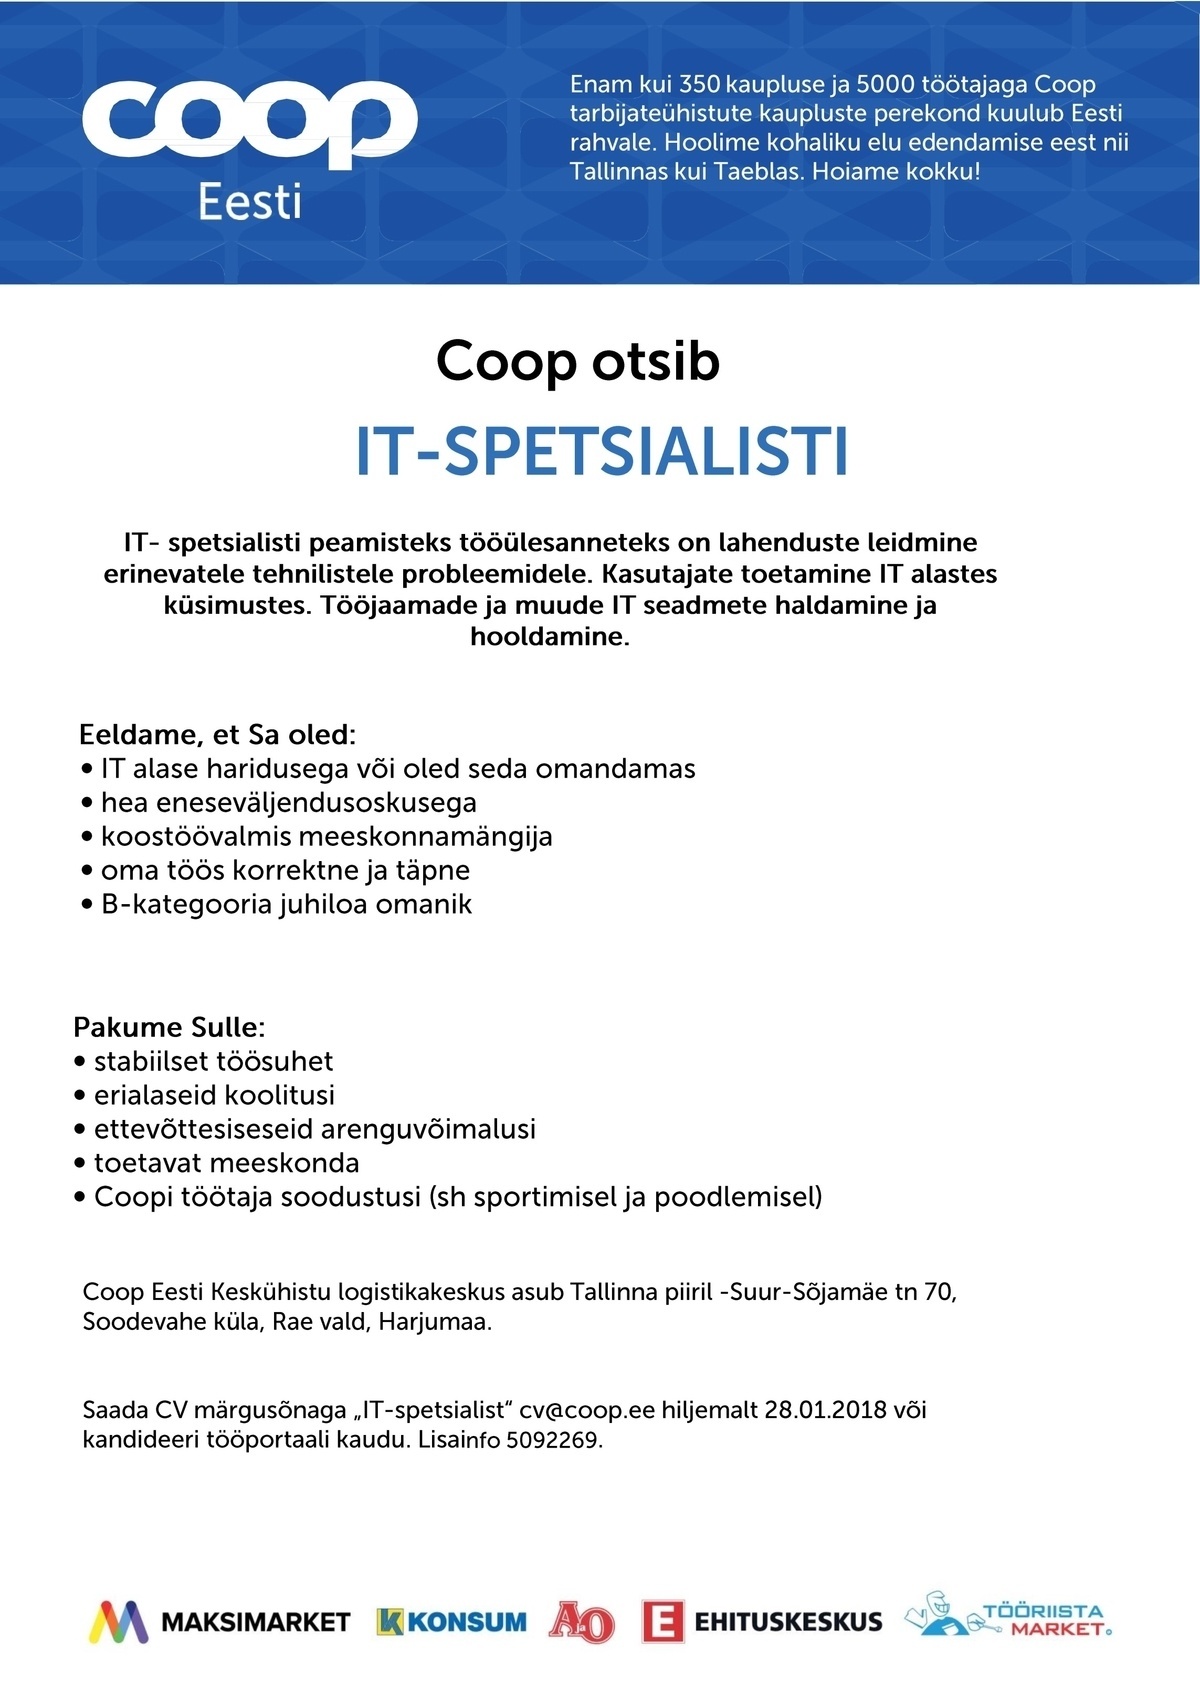 Coop Eesti Keskühistu IT-spetsialist